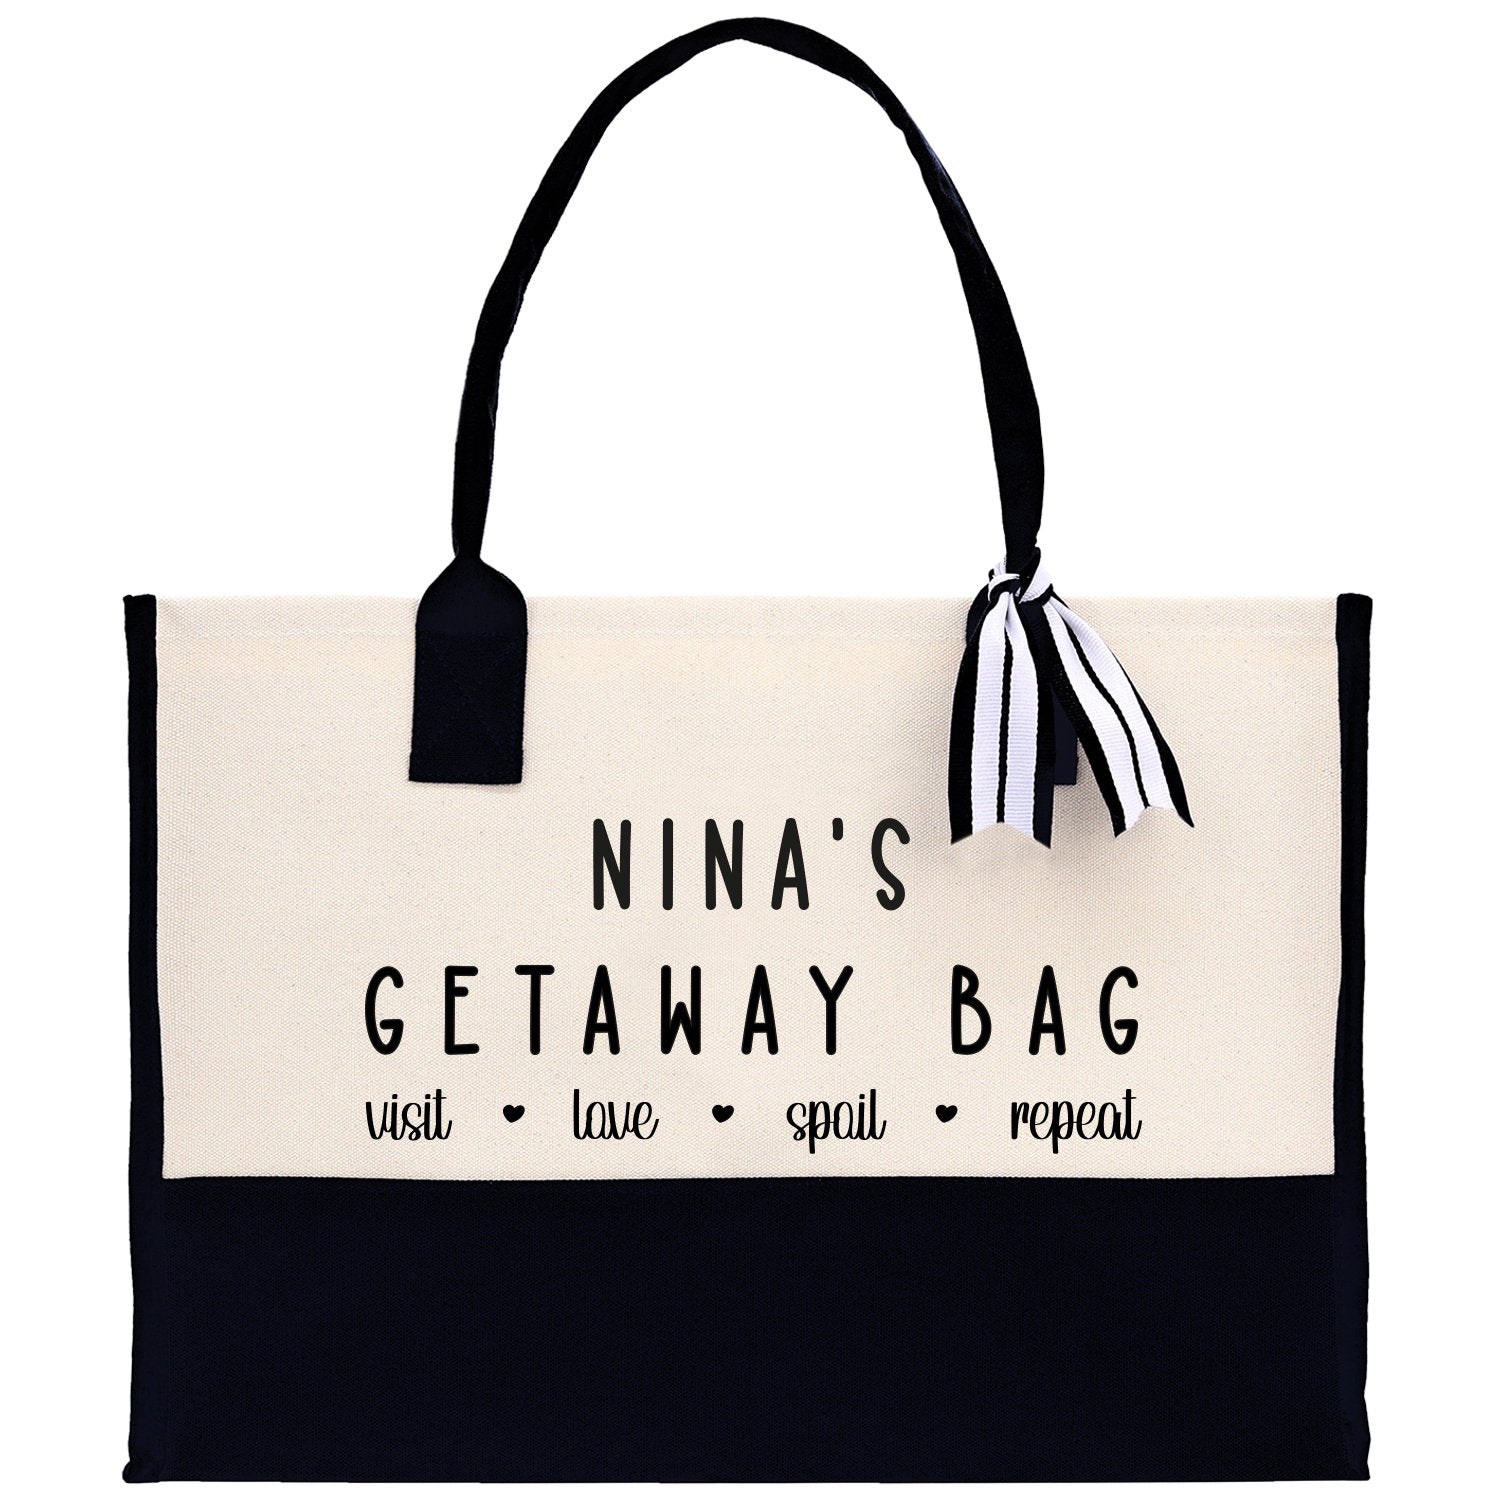 Grandma Tote Bag Grandma's Getaway Bag Grandma Nina Bag Grandma Gift Bag Shopping Bag Mothers Day Gift Live Love Spoil Bag Grandma GM1015